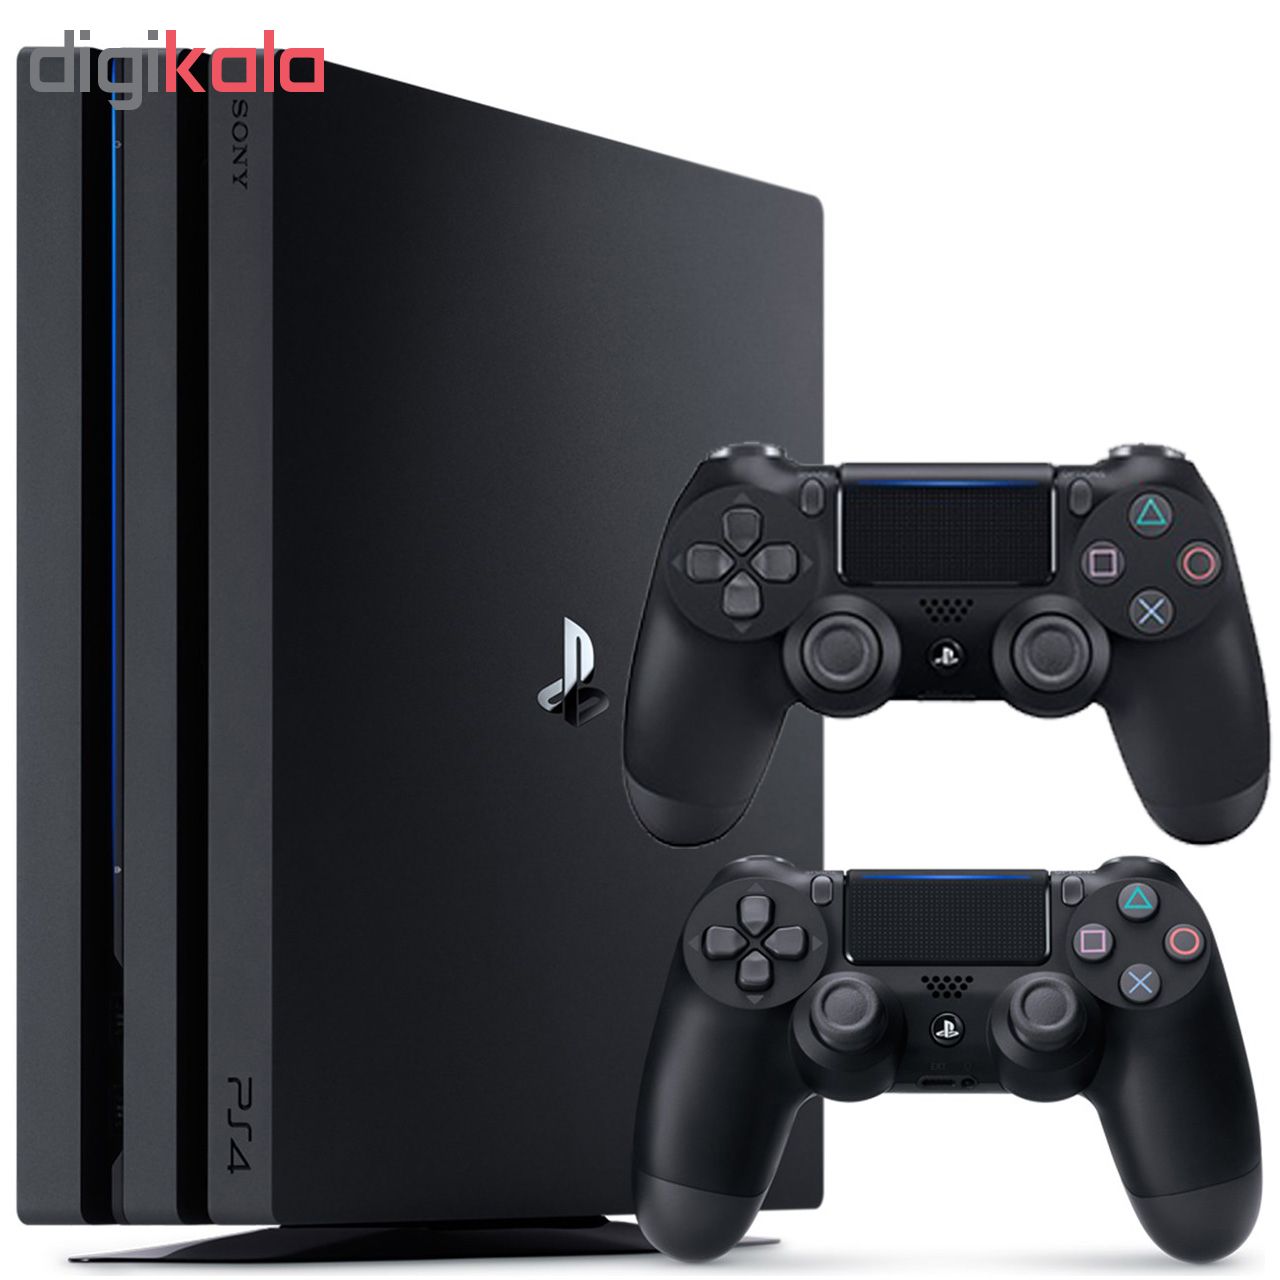 مجموعه کنسول بازی سونی مدل Playstation 4 Pro 2018 ریجن 2 کد CUH -7216B ظرفیت 1 ترابایت